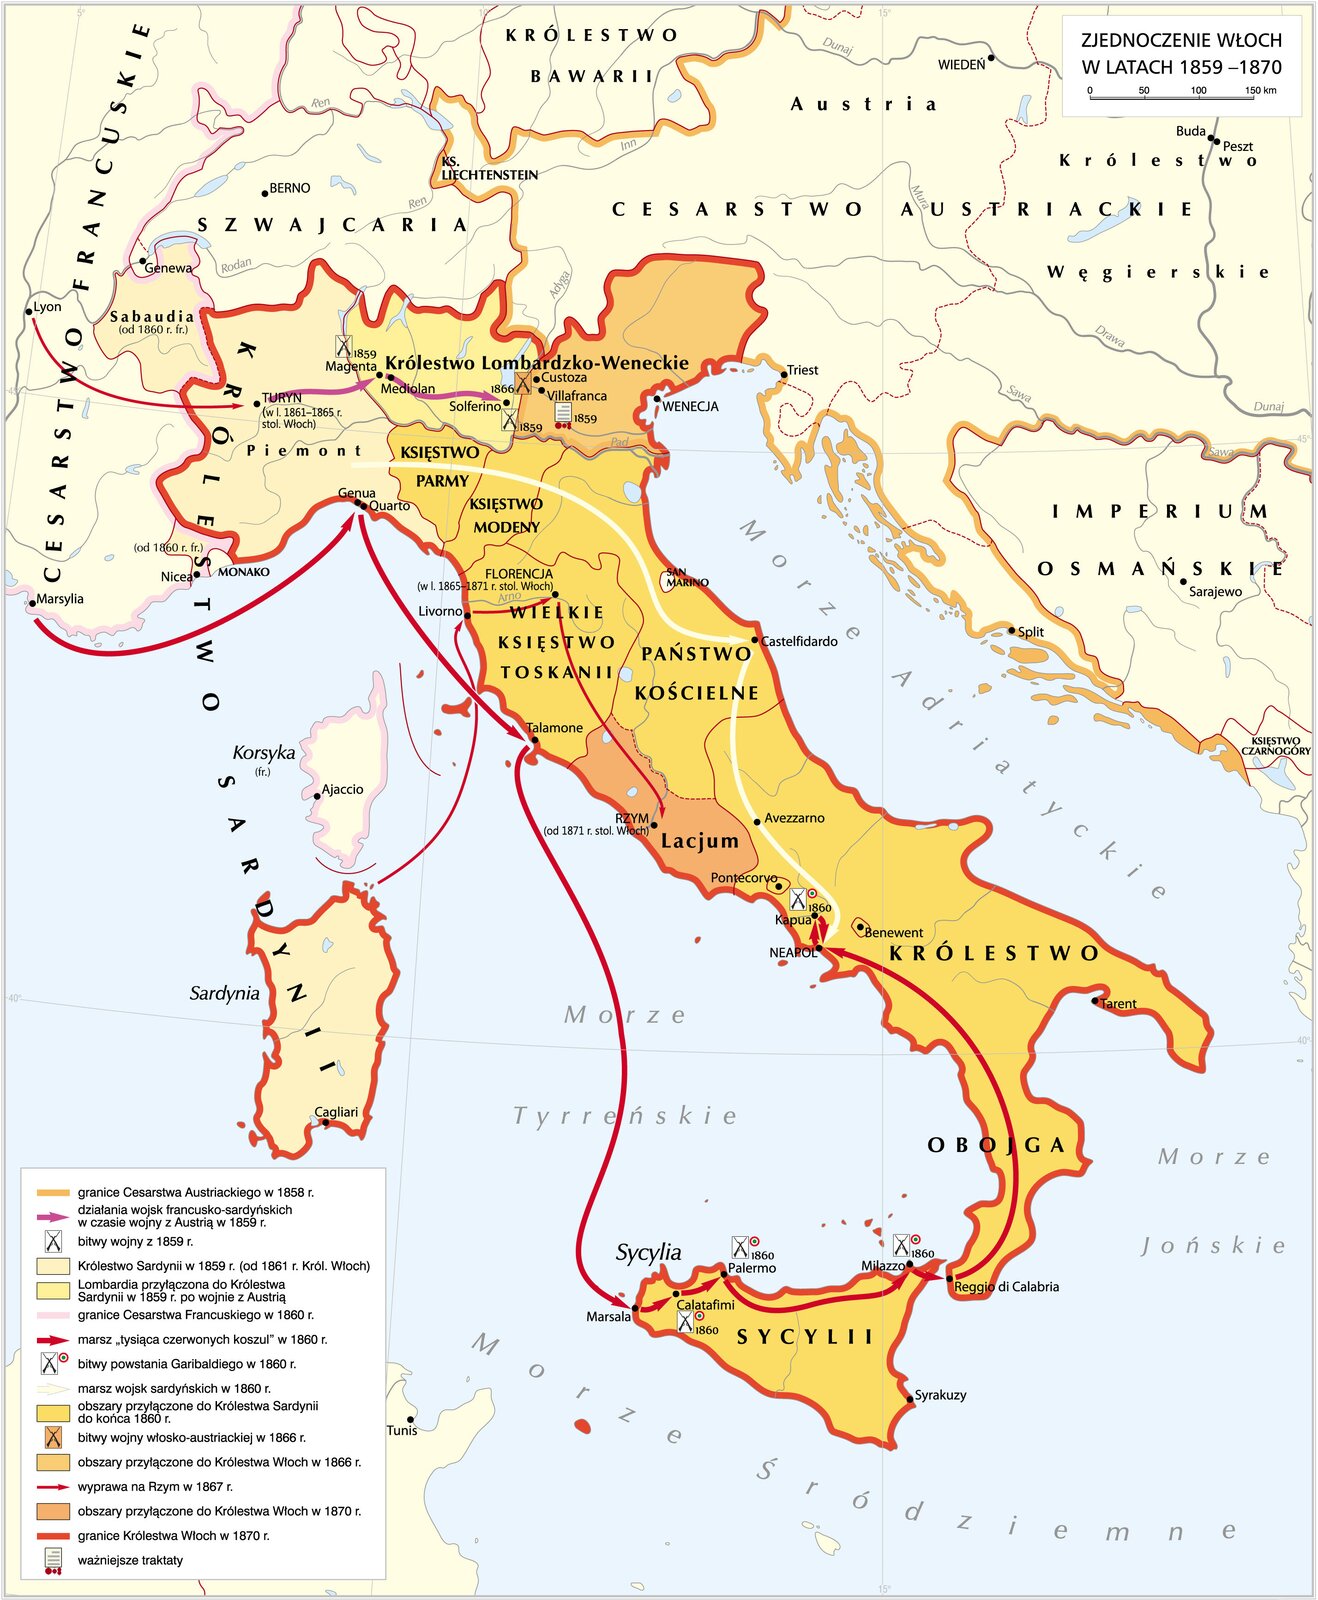 Mapa przedstawia zjednoczenie Włoch od 1859 do 1870 roku. W 1858 roku Cesarstwo Austriackie kontrolowało obszar Lombardii, Wenecji, Dalmacji, Austrii, Węgier oraz Krainy.  Królestwo Sardynii zajmowało obszar Piemontu, Sabaudii i Sardynii.  W 1859 roku podczas wojny z Austrią wojska Francuskie wraz z oddziałami Sardynii wkroczyły do Turynu, Mediolanu i dotarły Az pod Solferino. W 1859 po wygranej wojnie z Austrią, Lombardia została przyłączona do Królestwa Sardynii. W 1860 roku Sardyńska Sabaudia oraz obszar wokół Monako został przyłączony do Francji. W 1860 roku do Królestwa Sardynii został przyłączony region Wenecji. W 1860 roku z francuskiej Marsylii wyruszył tysiąca czerwonych koszul. Drogą morską wzdłuż wybrzeża dotarli oni do Sycylii, gdzie po stoczeni kilku zwycięskich bitew przedostali się na południe półwyspu Apenińskiego i dotarli do Neapolu. Jednocześnie wojna Sardyńskie wyruszyły na południe również w stronę Neapolu.  W 1861 roku Królestwo Sardynii stało się Królestwem Włoch W 1866 roku do Królestwa Włoch przyłączono Księstwo Parmy, Księstwo Modeny, Wielkie Księstwo Toskanii, północną część Państwa Kościelnego oraz Królestwo Obojga Sycylii. W 1867 rozpoczęła się wyprawa na Rzym. Włoskie wojska zostały przerzucone z Sardynii do Toskanii i stamtąd wyruszyły i przejęły kontrolę nad resztą Państwa Kościelnego.  W 1870 roku do Królestwa Włoch przyłączono południową część Państwa Kościelnego. W 1871 roku Rzym stał się stolicą Królestwa Włoch. 